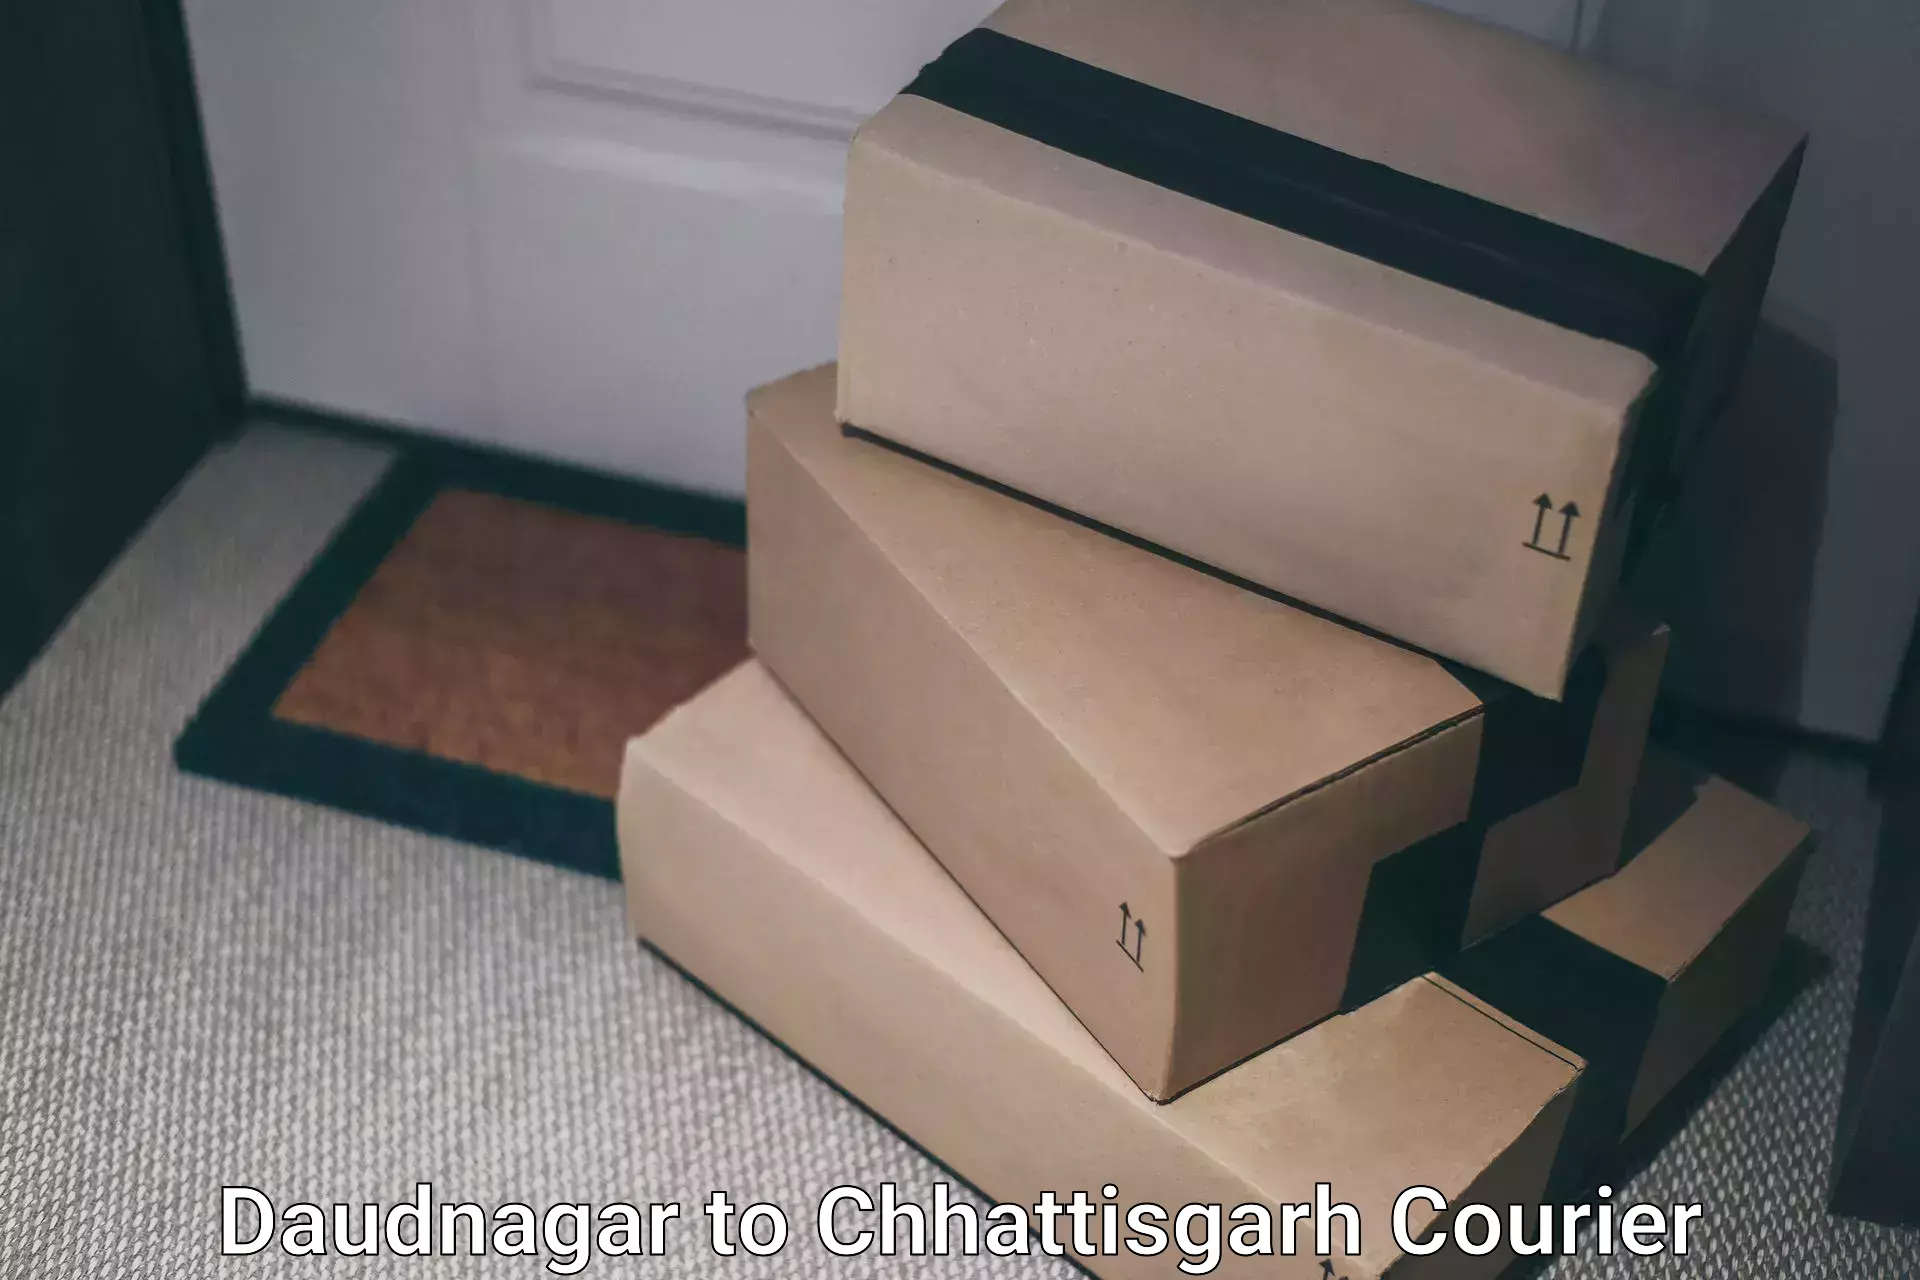 Round-the-clock parcel delivery in Daudnagar to Wadrafnagar